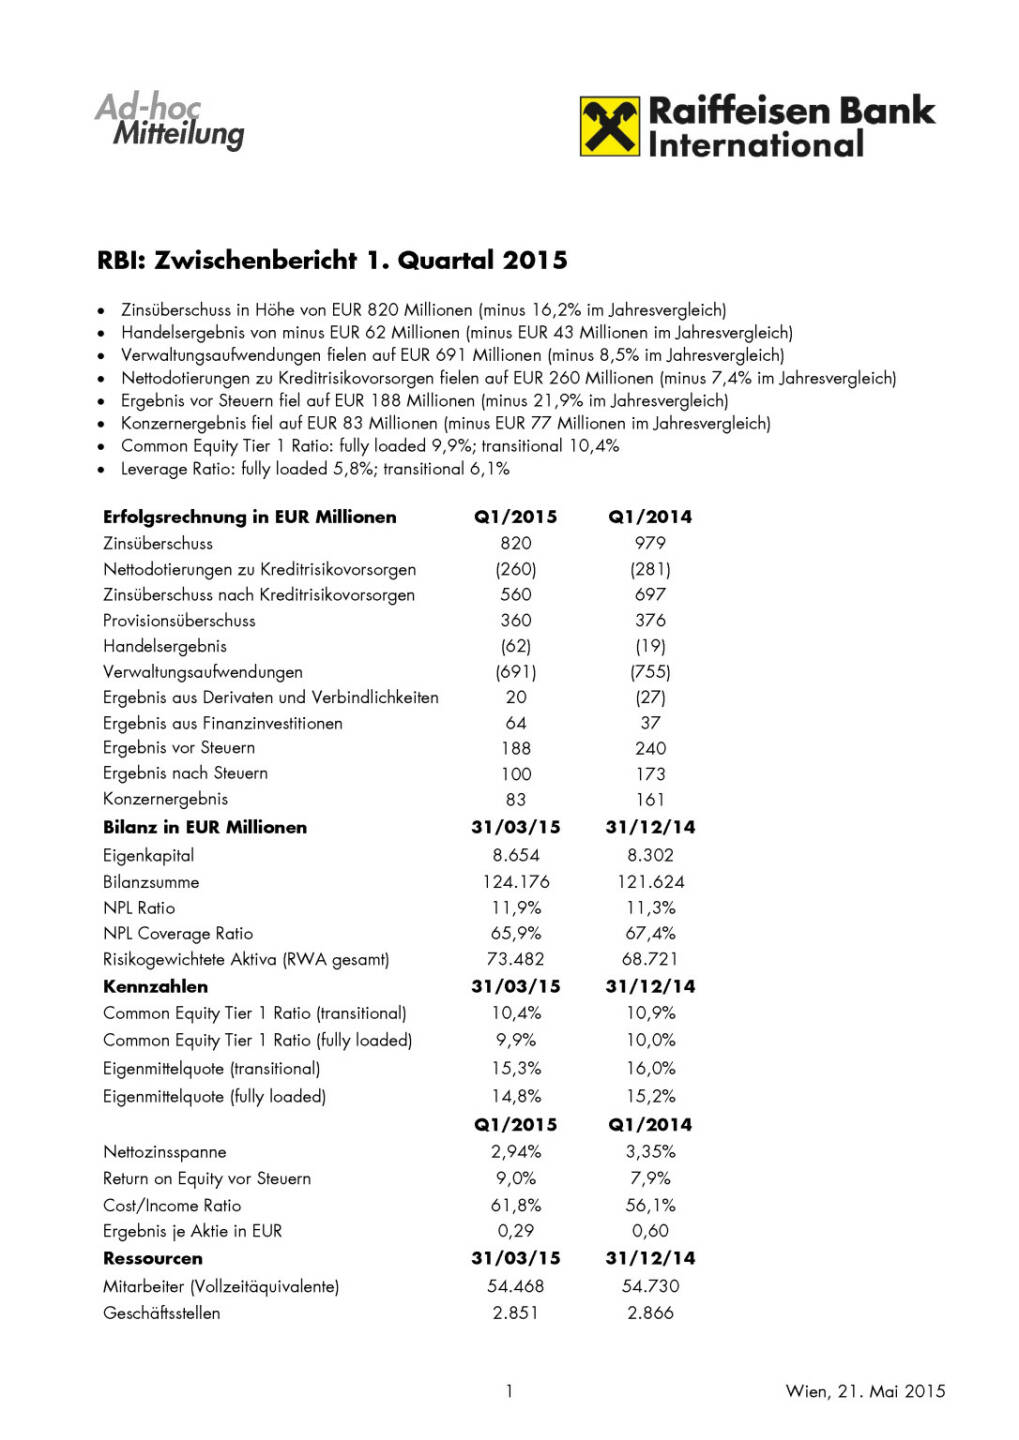 RBI liefert Q1 2015 - Konzernergebnis auf 83 Mio. fast halbiert, Seite 1/2, komplettes Dokument unter http://boerse-social.com/static/uploads/file_6_rbi_q1_2015.pdf